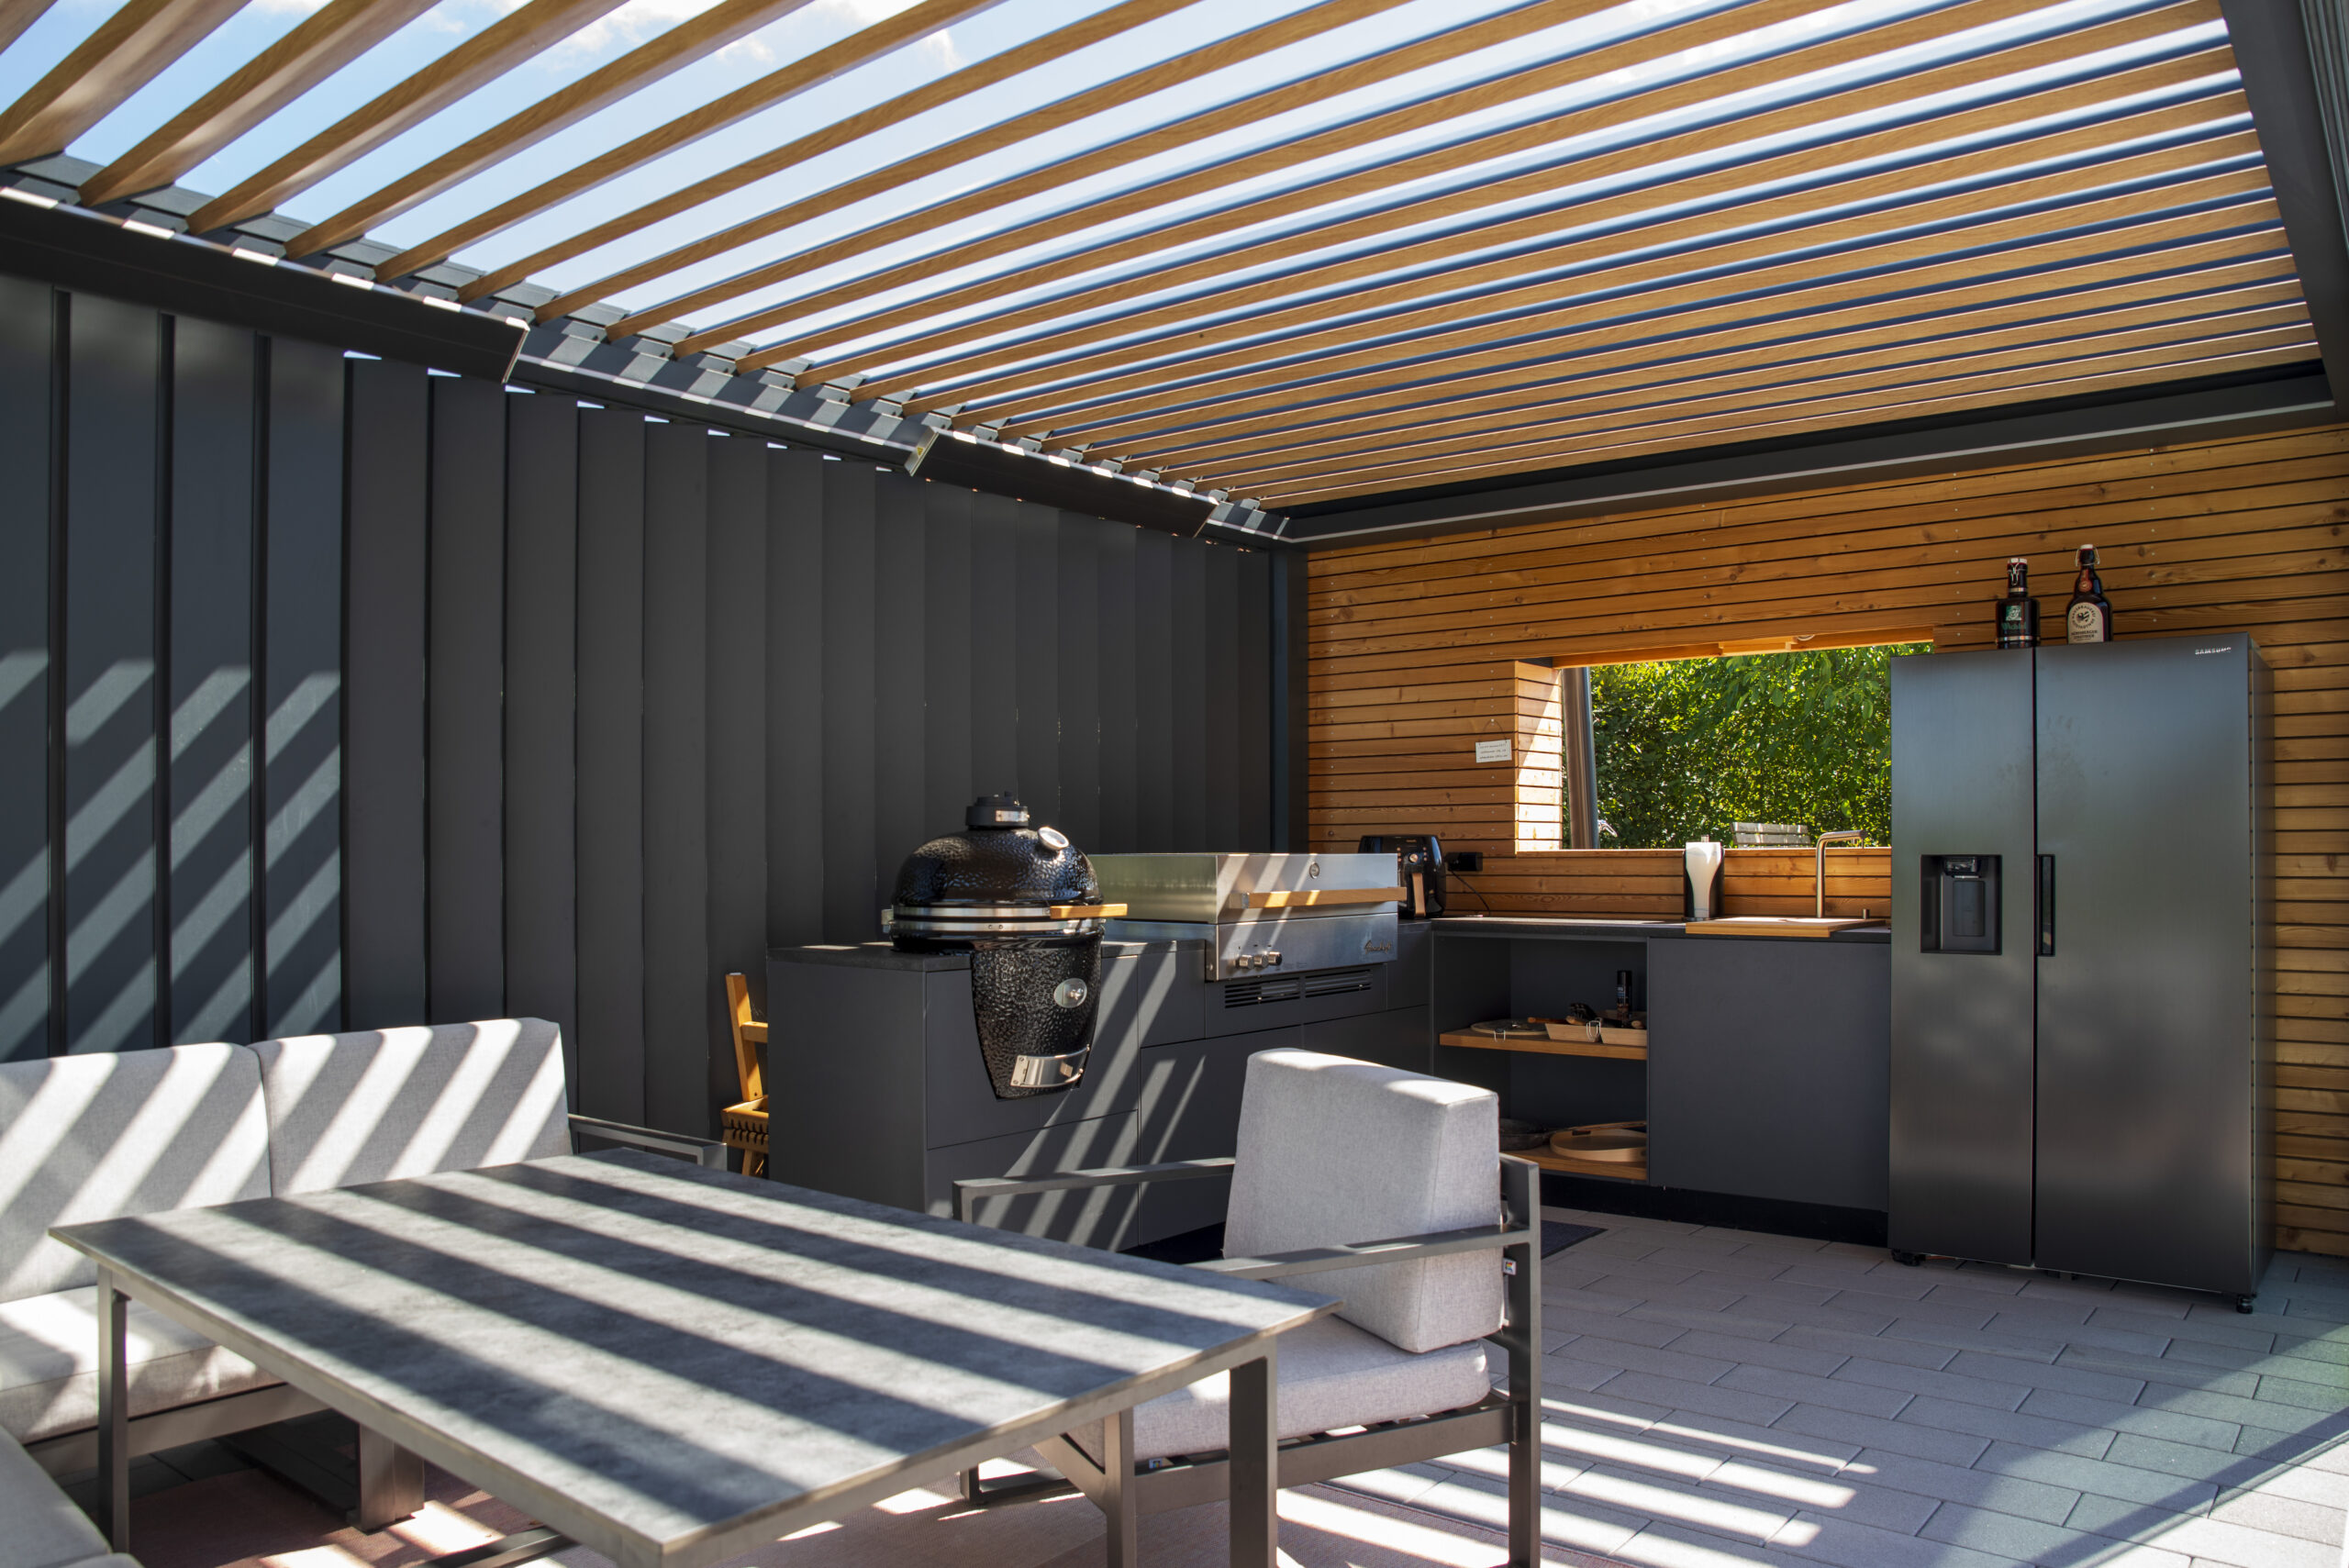 2 Grills, Outdoor-Spühle und Outdoor-Kühlschrank in einer mit Lamellen-Pergola überdachten Outdoor-Küche.